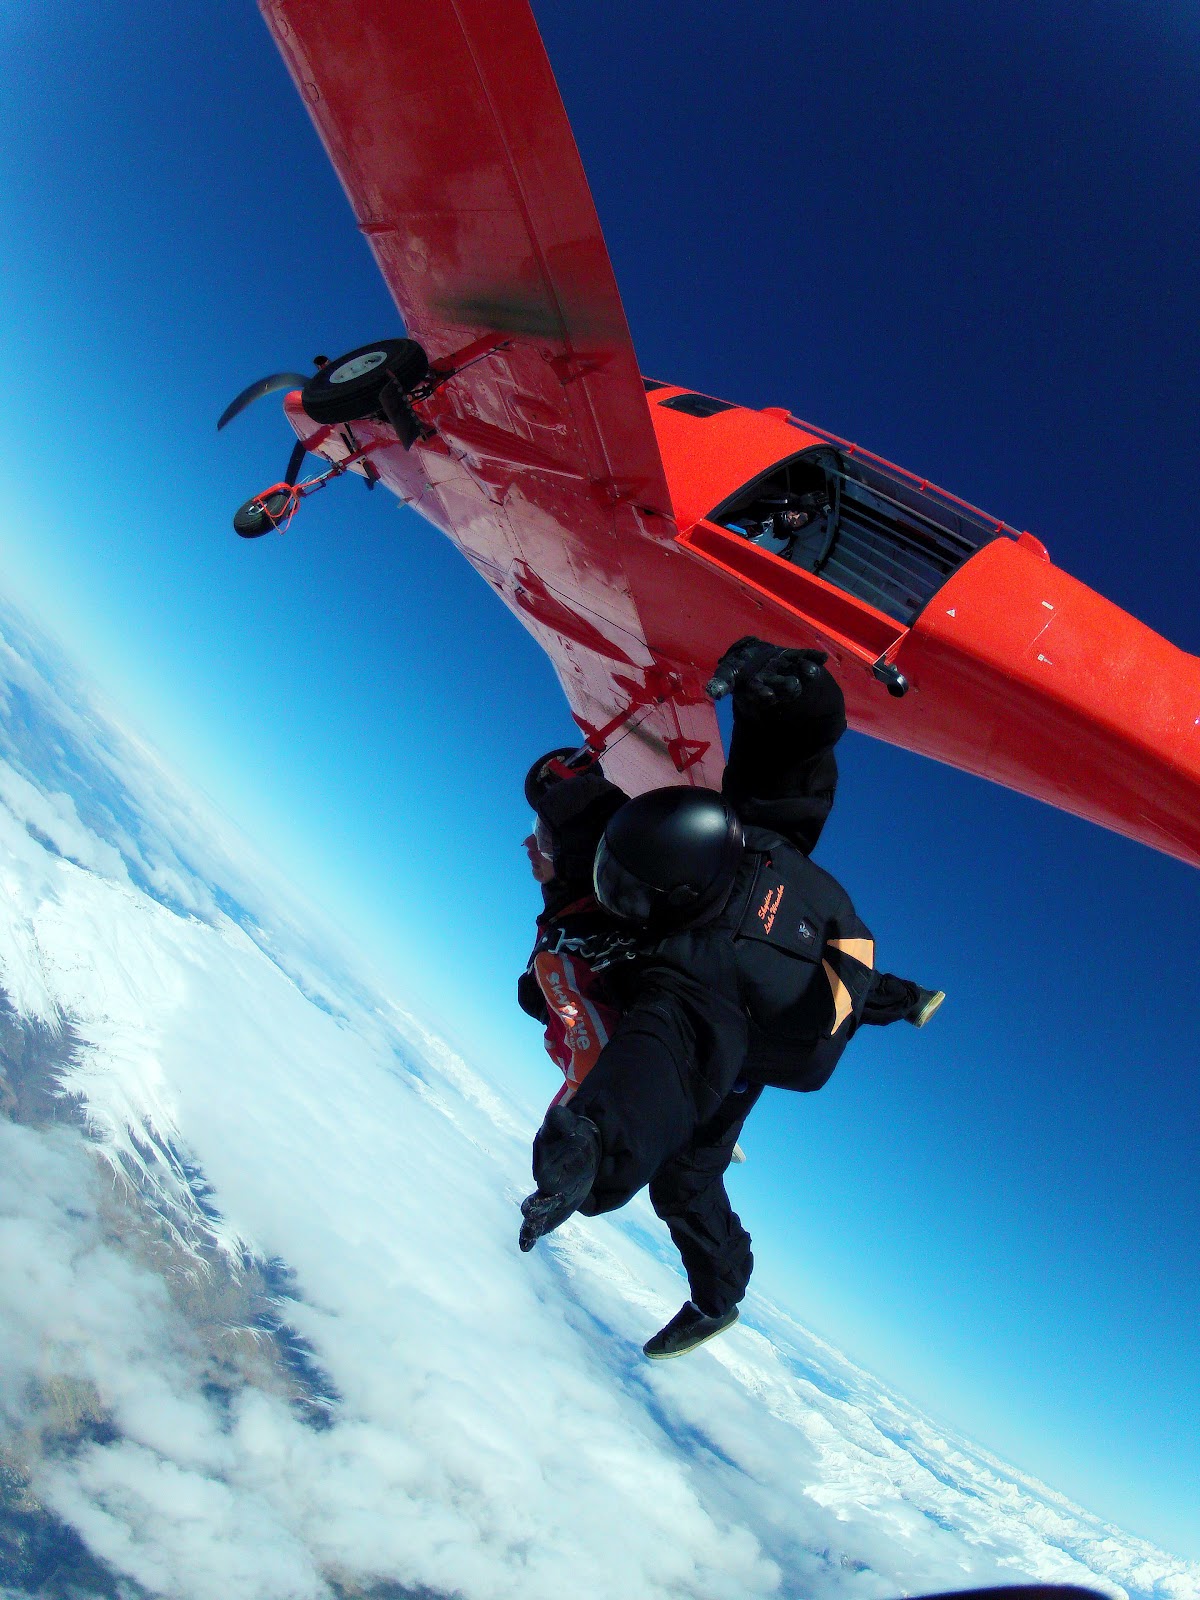 飞机跳跳伞运动员 库存图片. 图片 包括有 启用, 形成, 下降, 技能, 降伞, 人们, 小组, 关闭 - 23458621